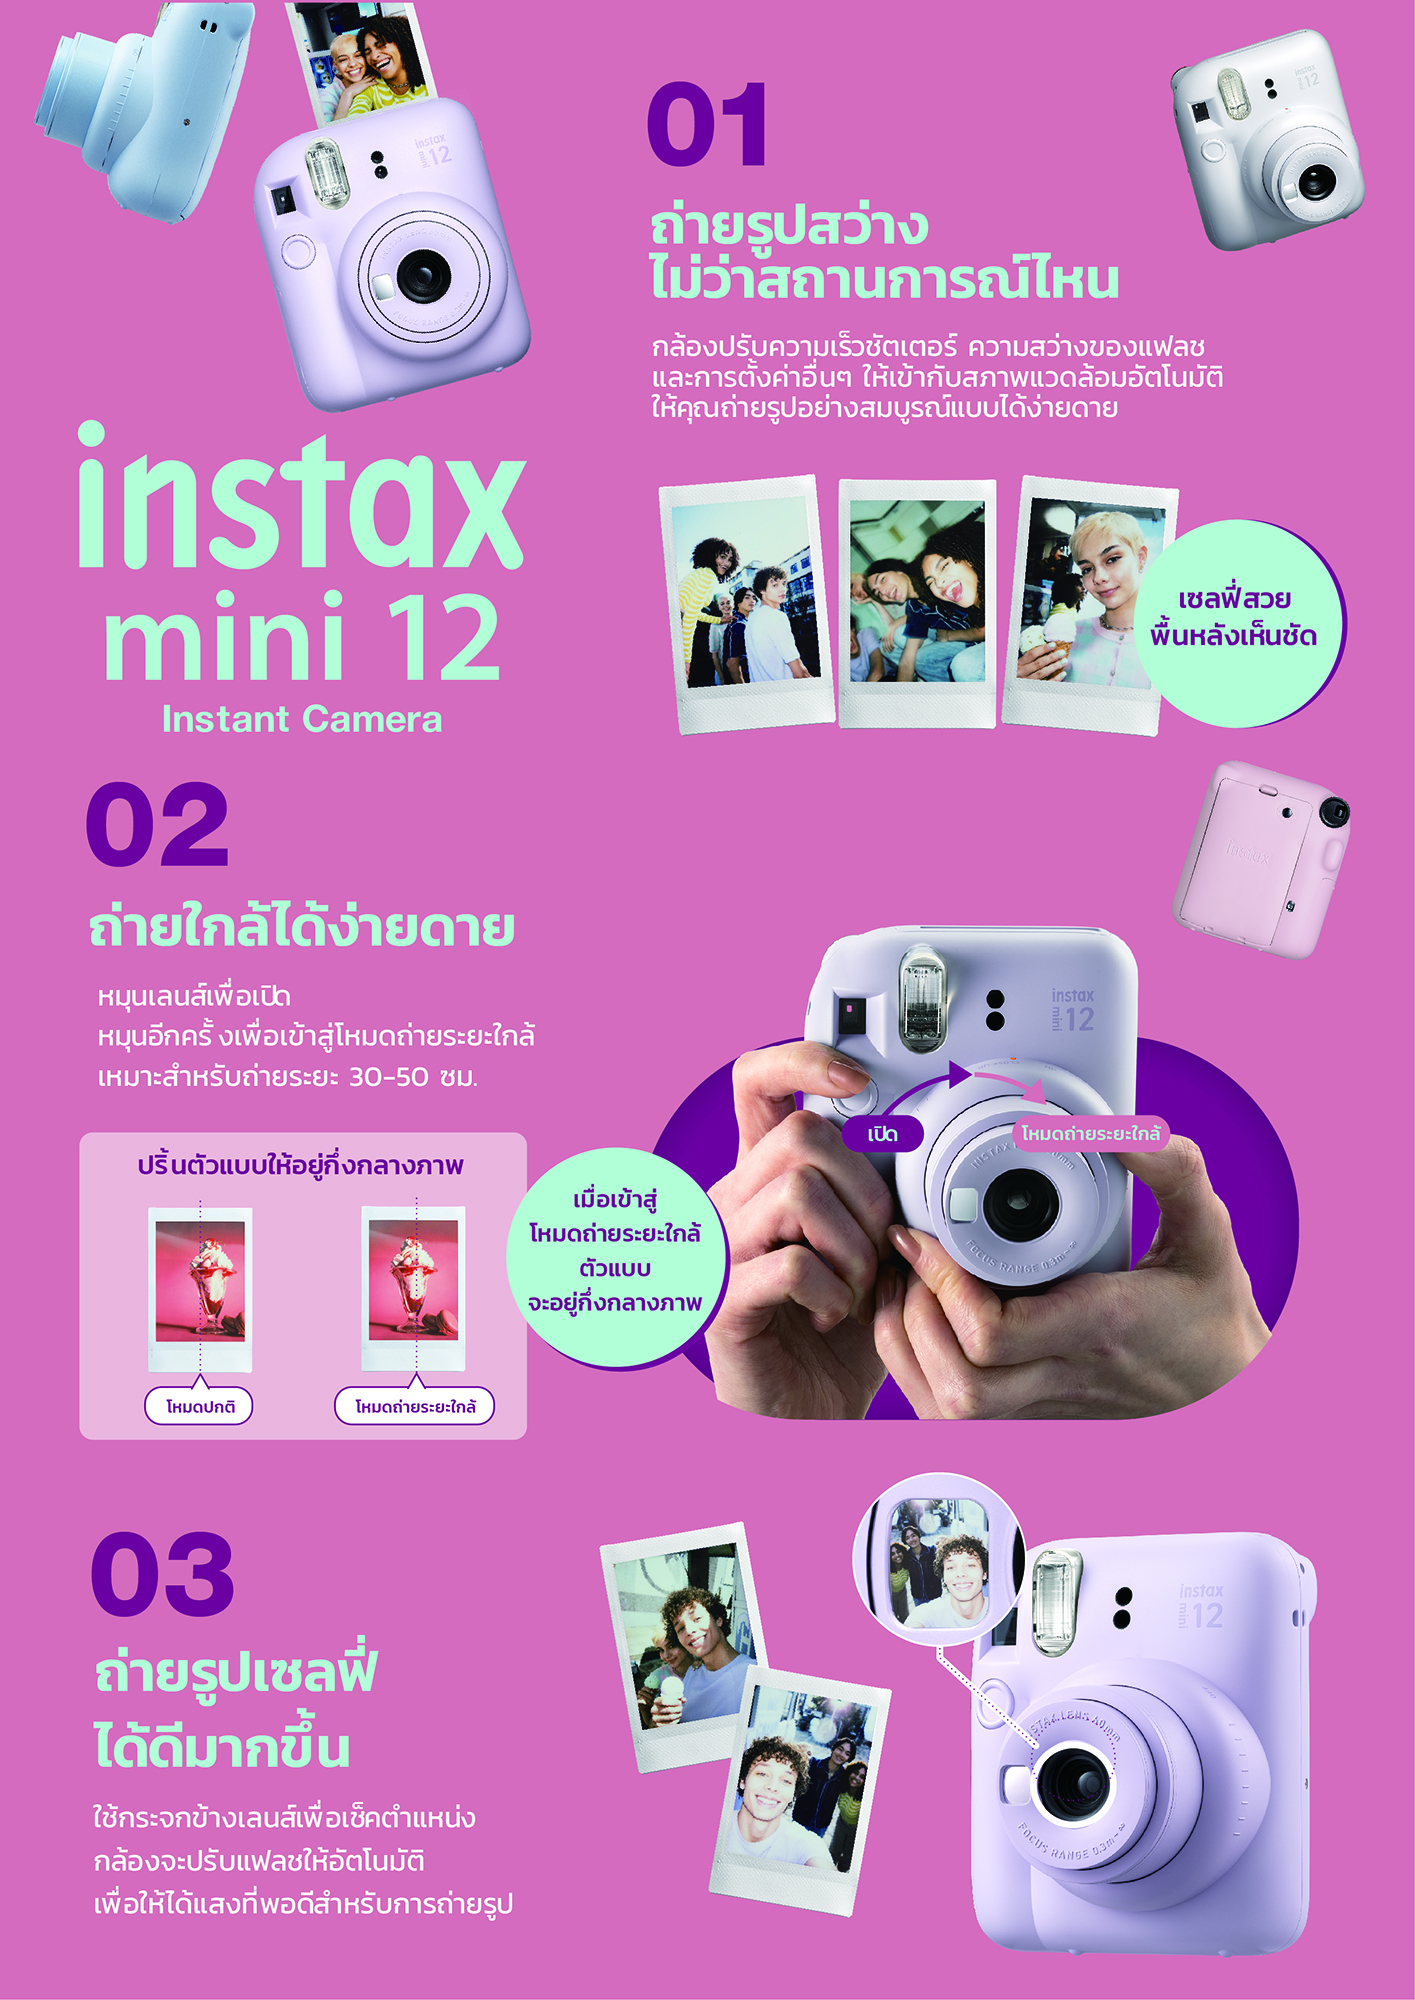 รายละเอียดเพิ่มเติมเกี่ยวกับ Flm Instax Mini 12  (Instant Film Camera) [กล้องฟิล์ม] - ประกันศูนย์